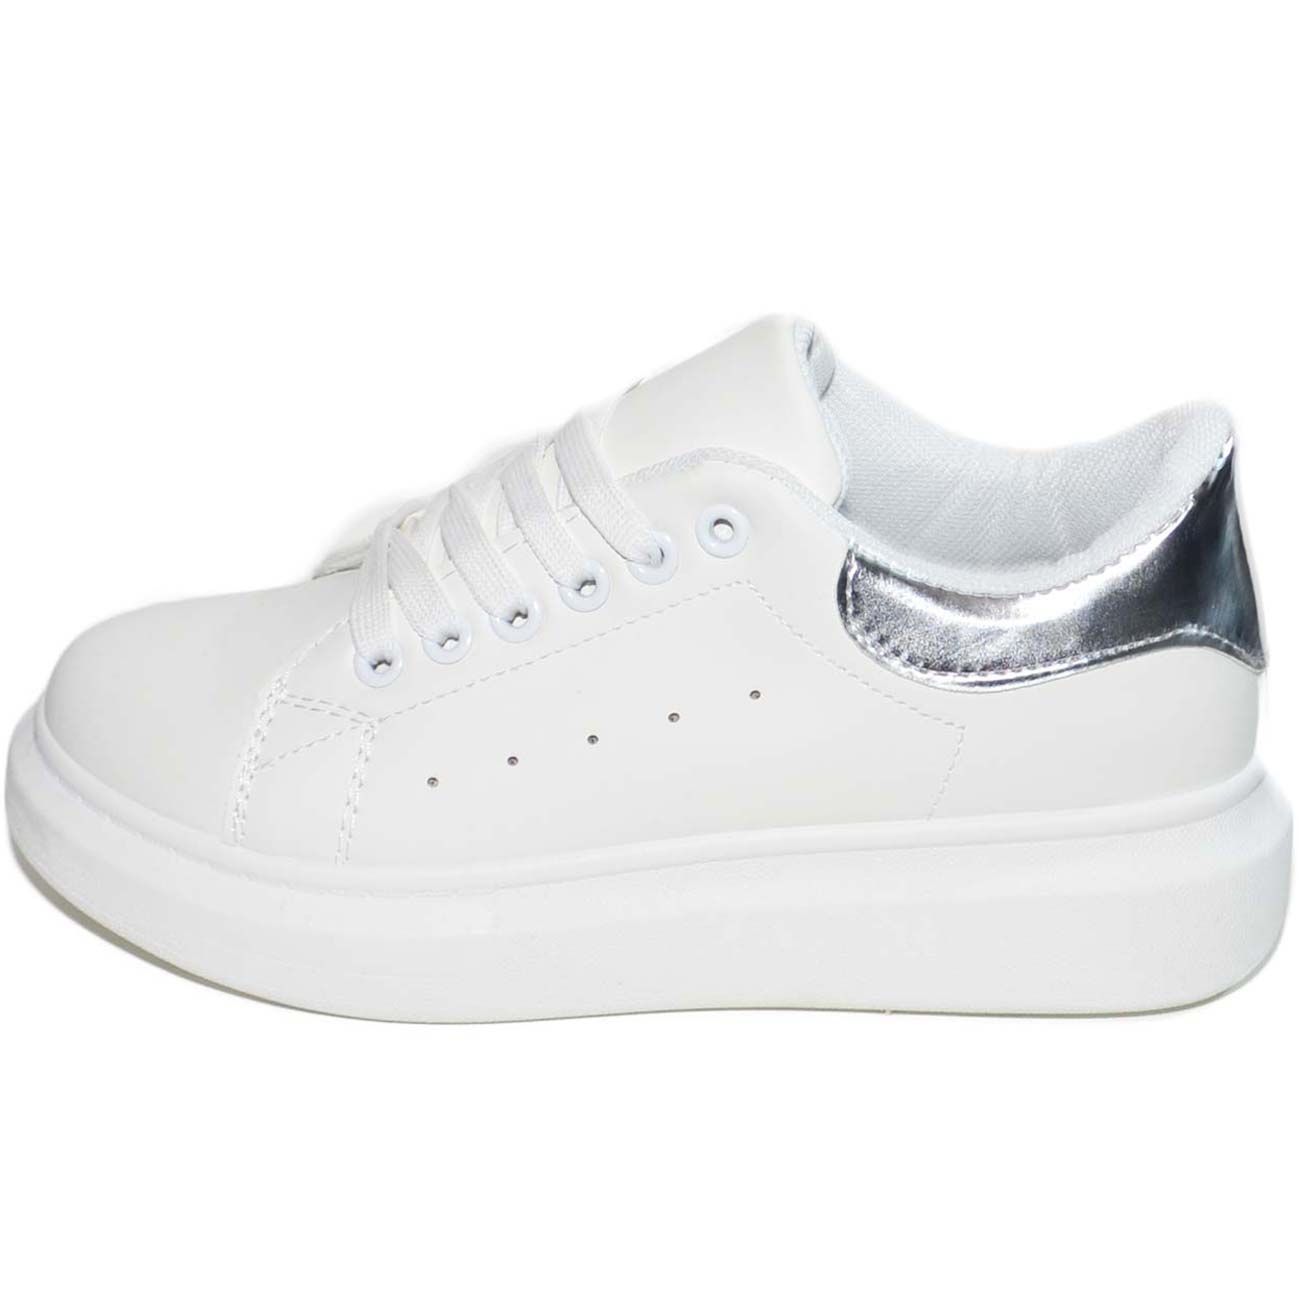 Sneakers donna bassa bianca con fondo alto alba ondulato total white linea basic 